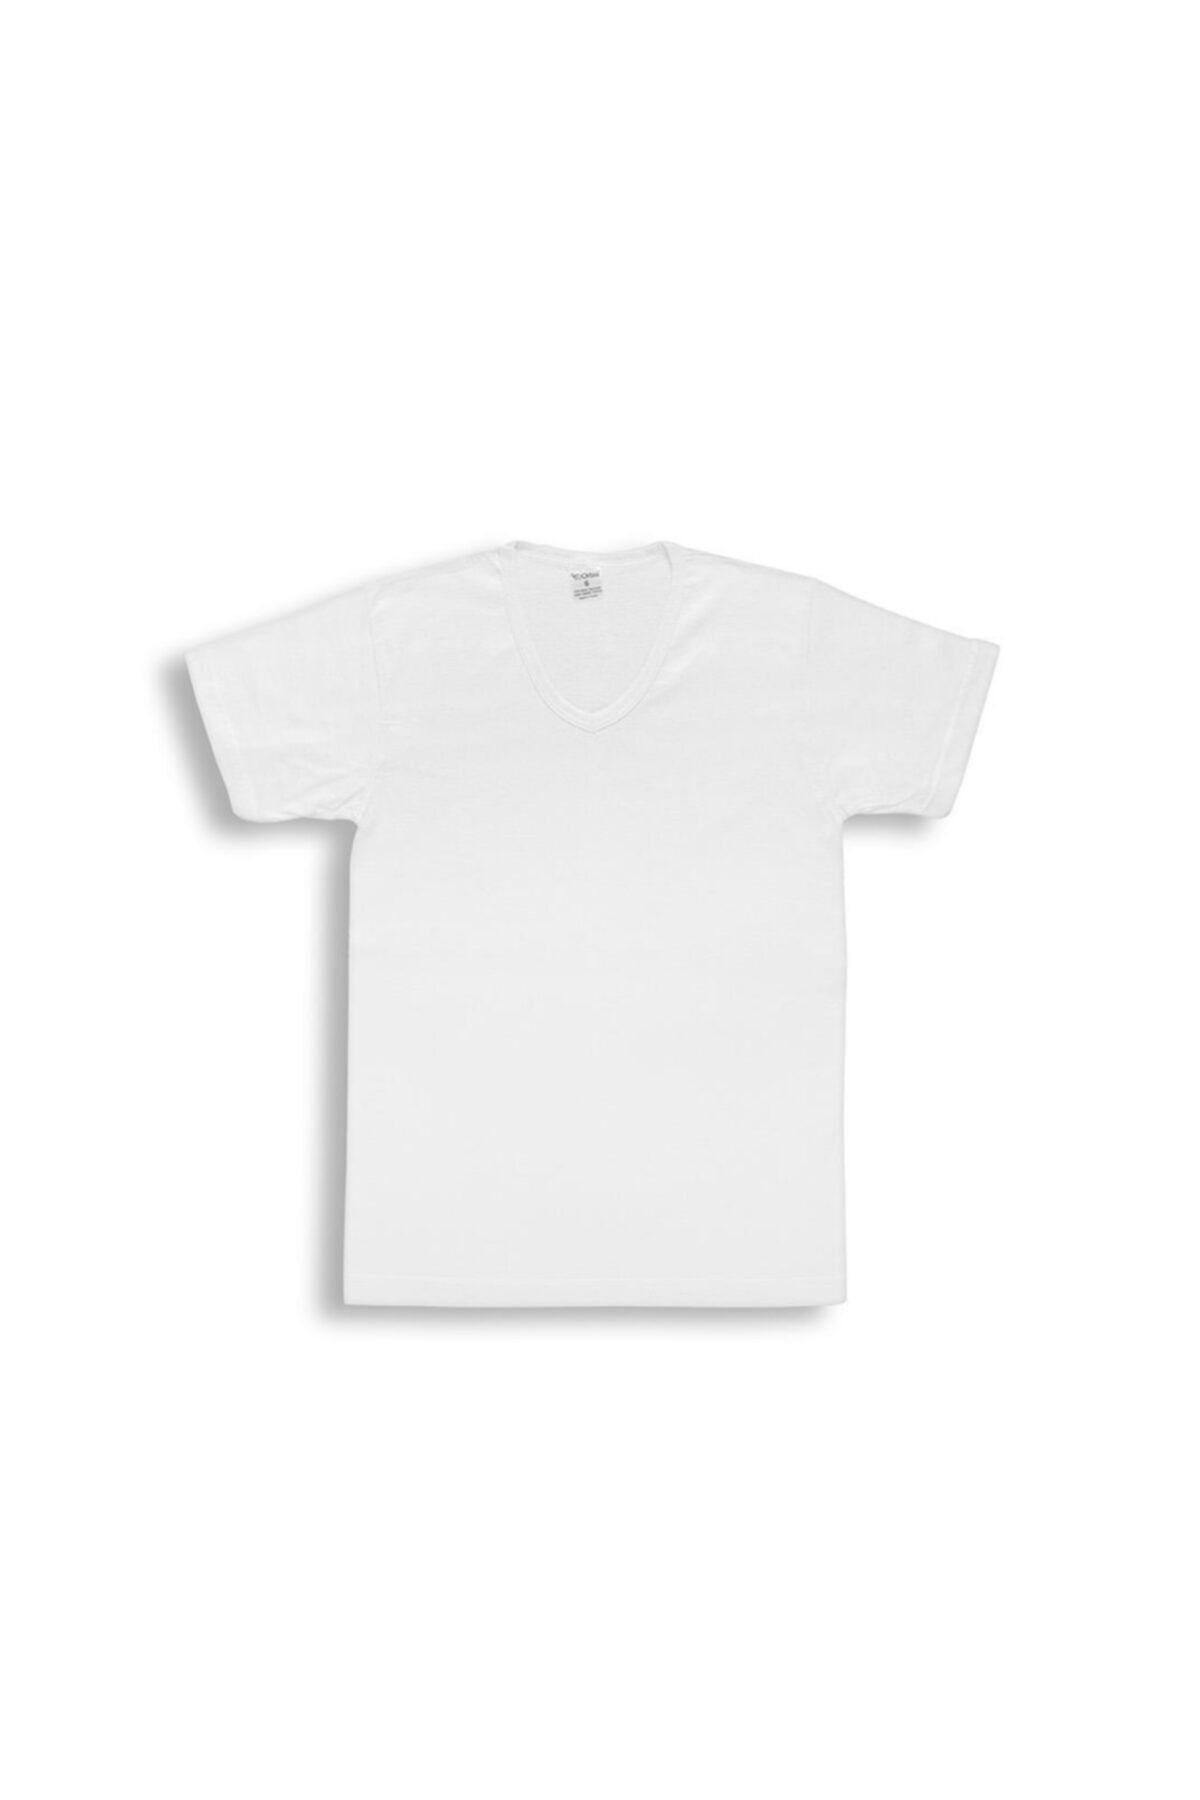 Orbis Erkek Beyaz 3'lü V Yaka Tişört 14005-A3